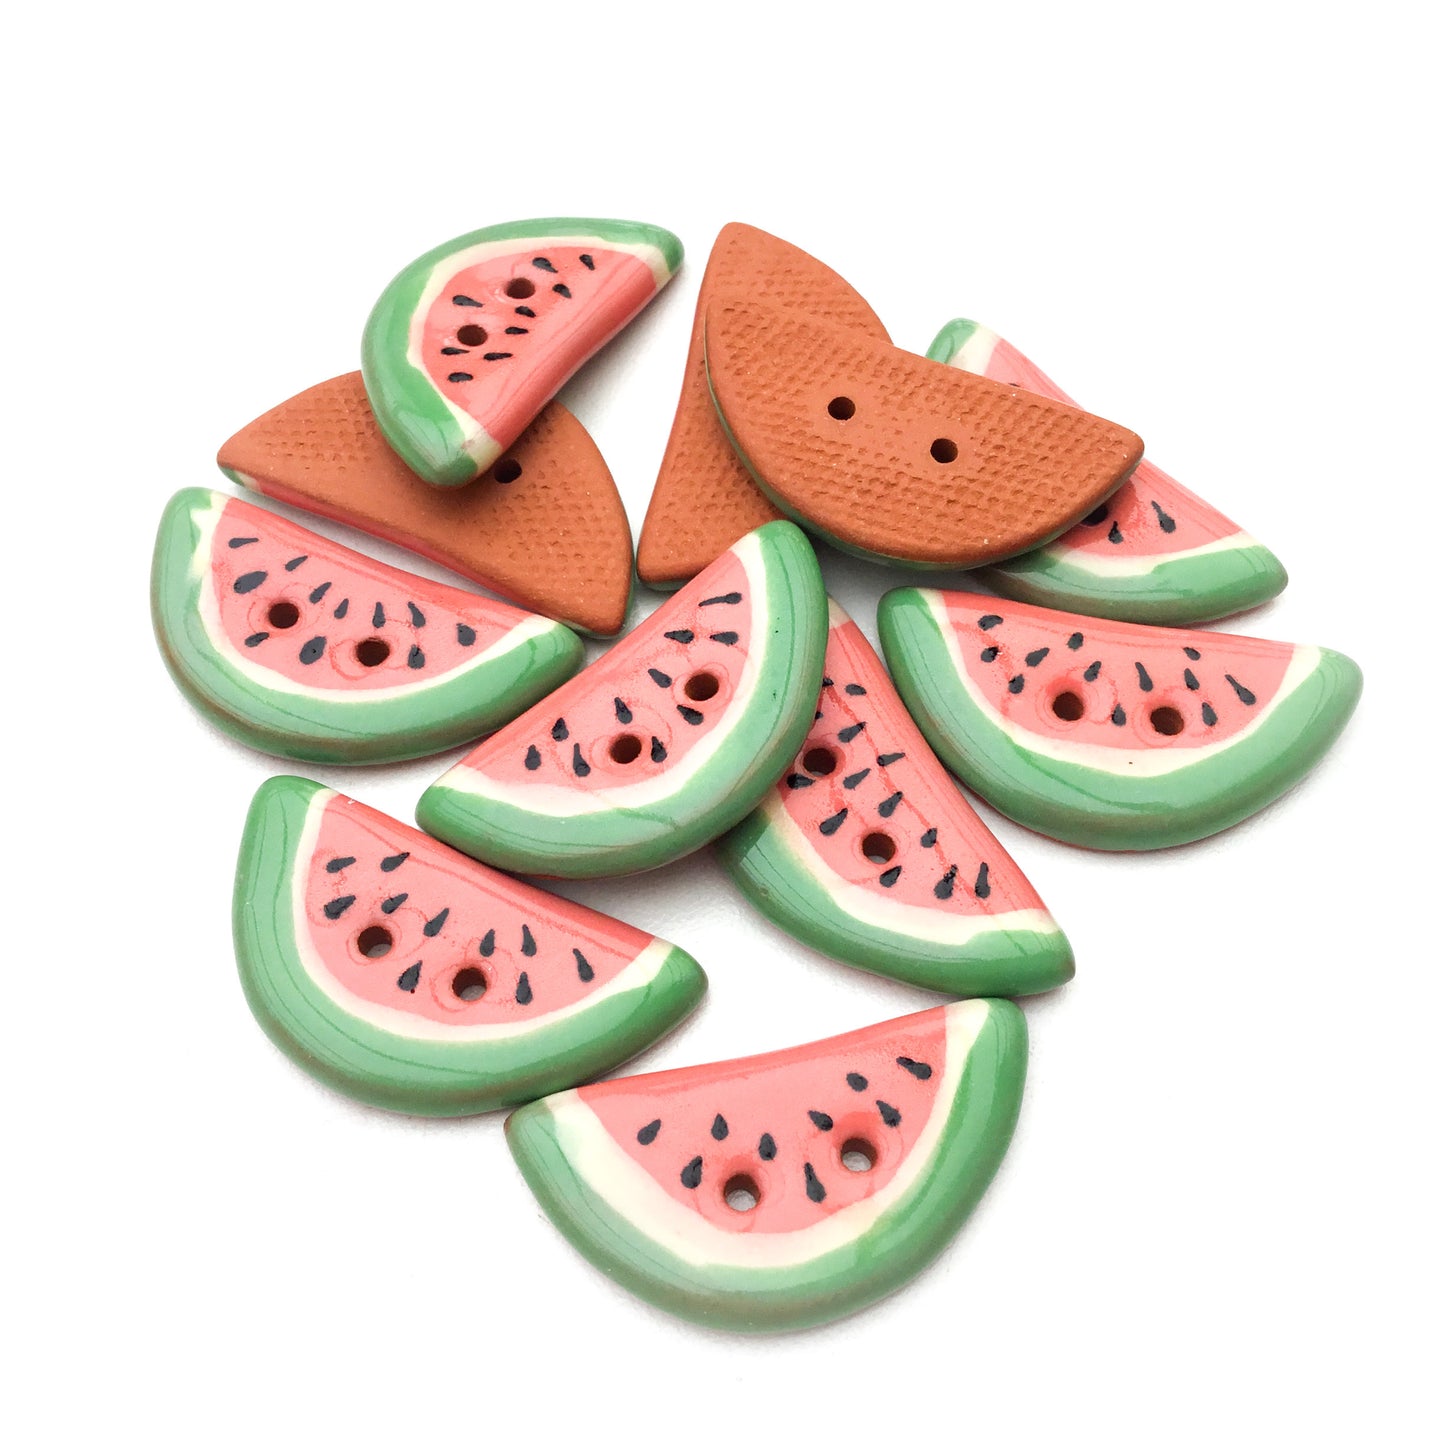 Watermelon Slice Button - 5/8" x 1 1/4"